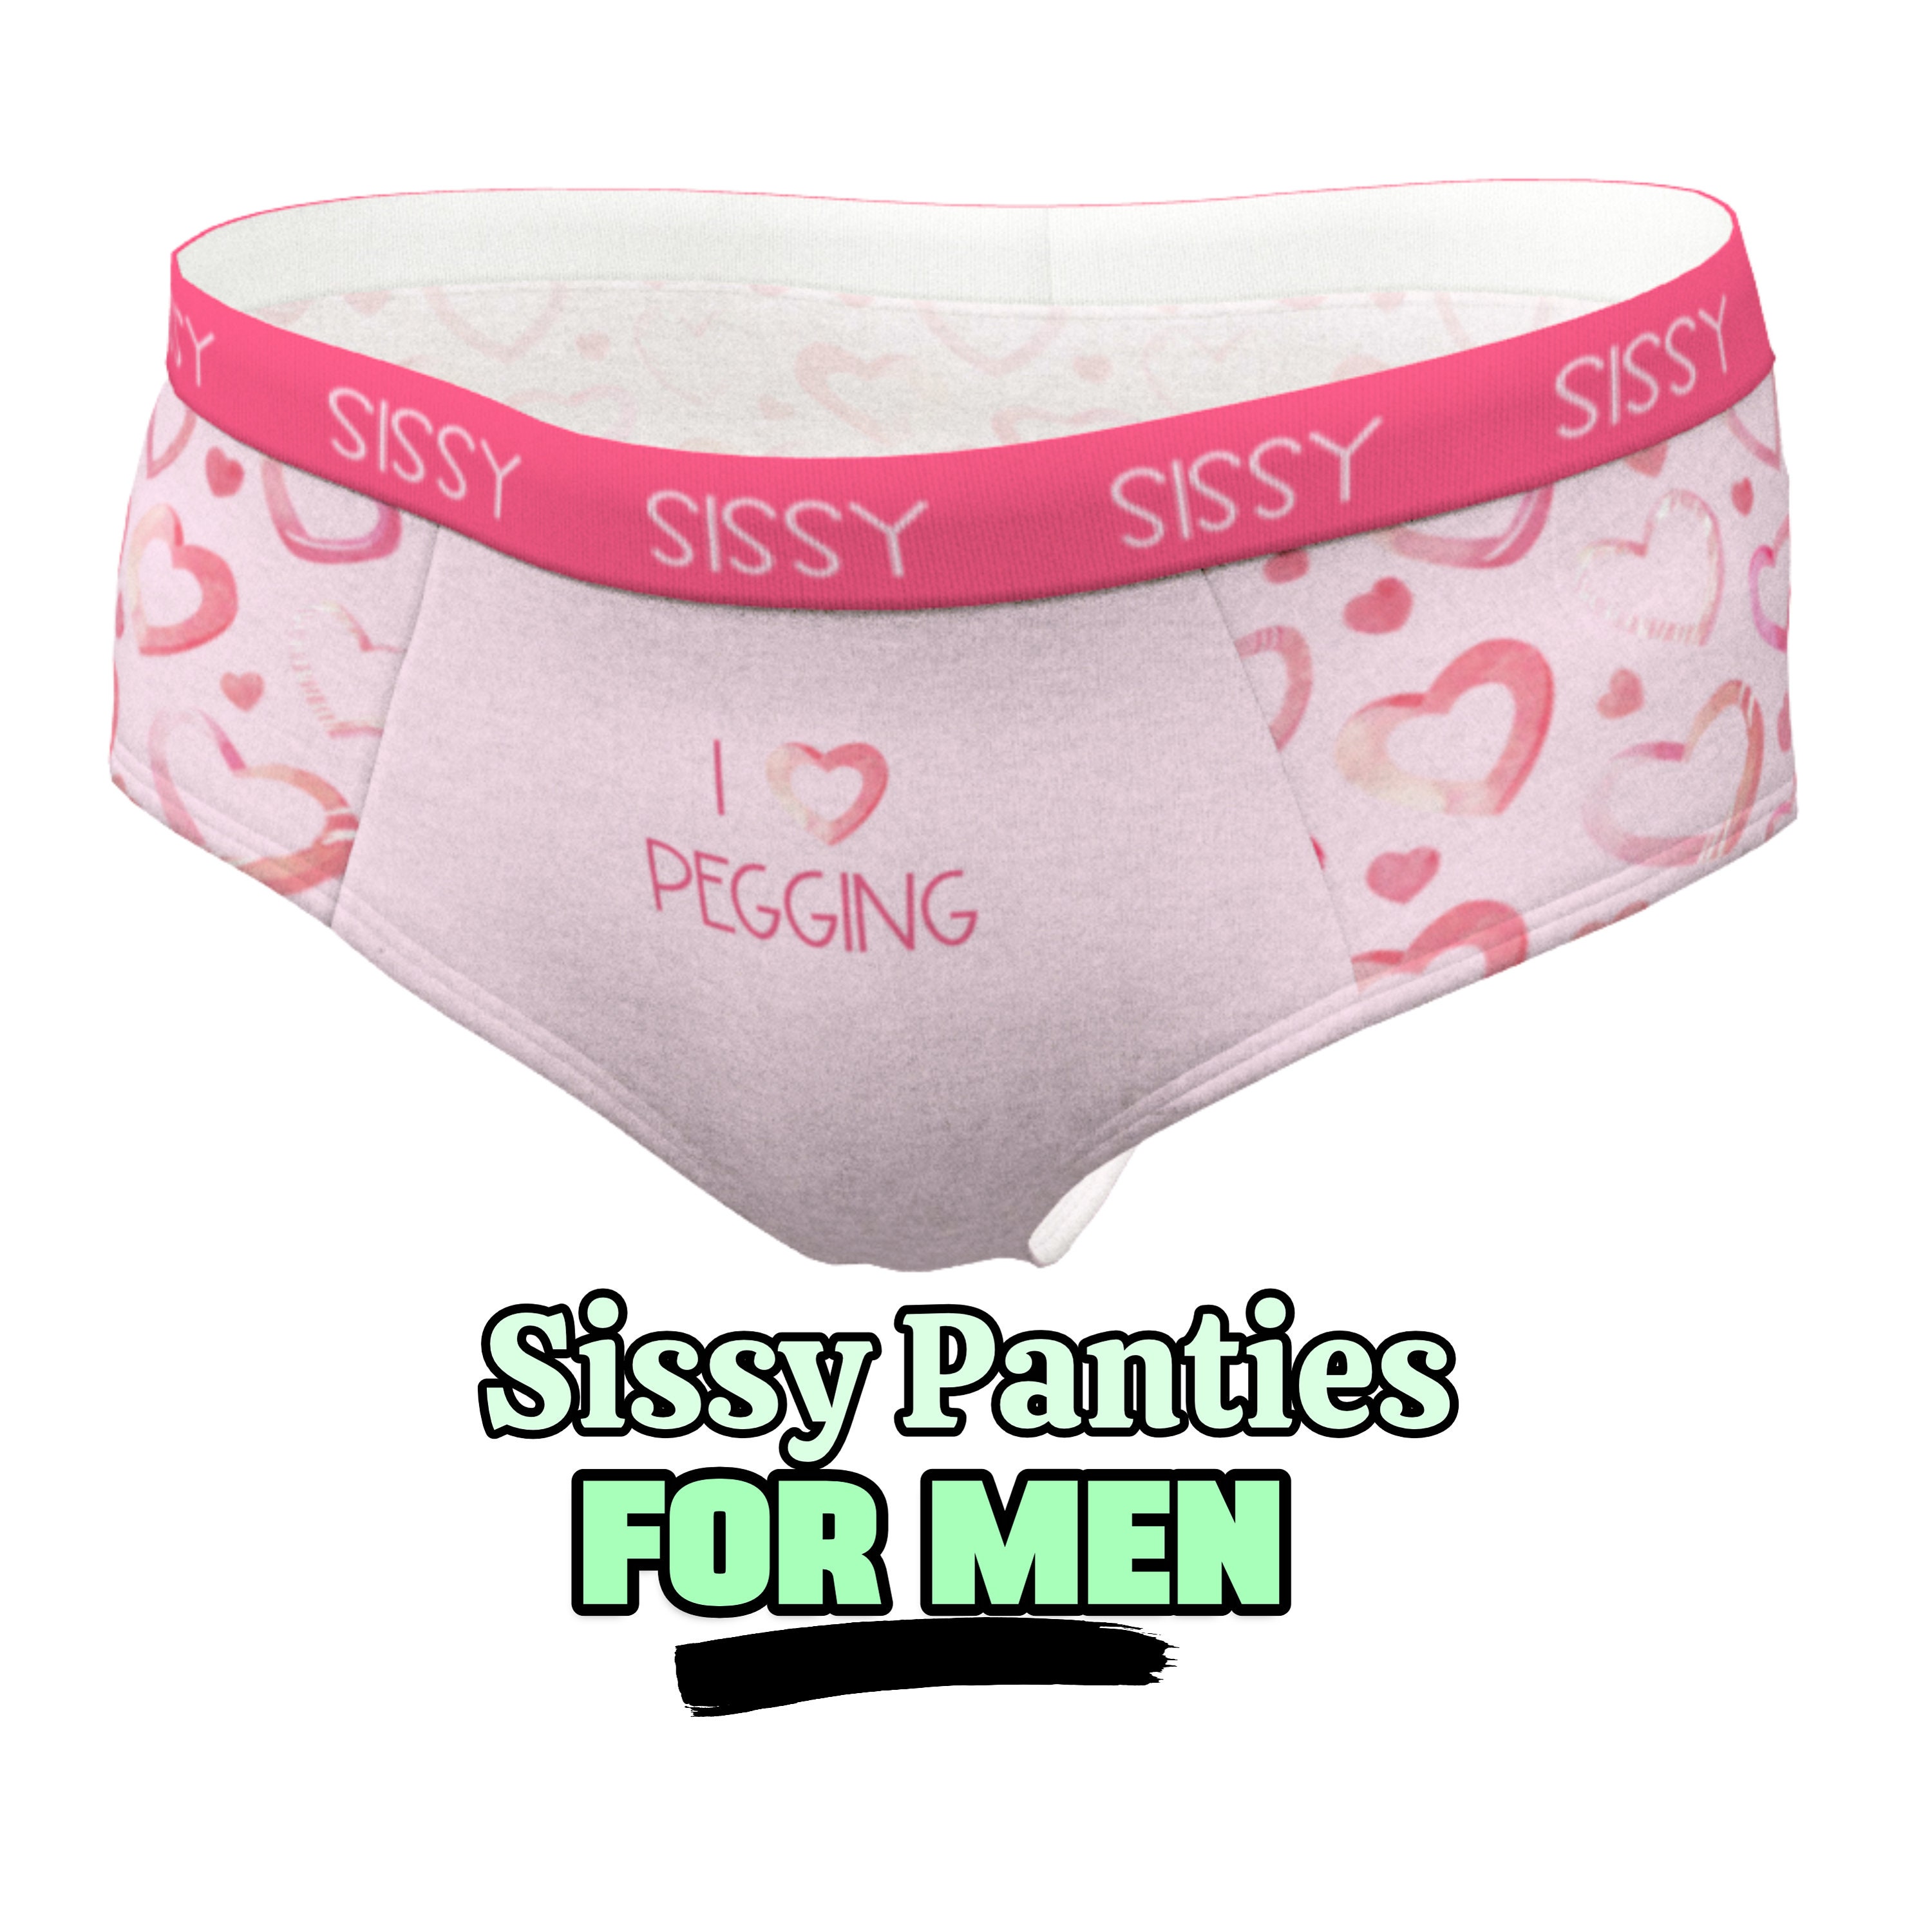 Shop Sissy Panties Online